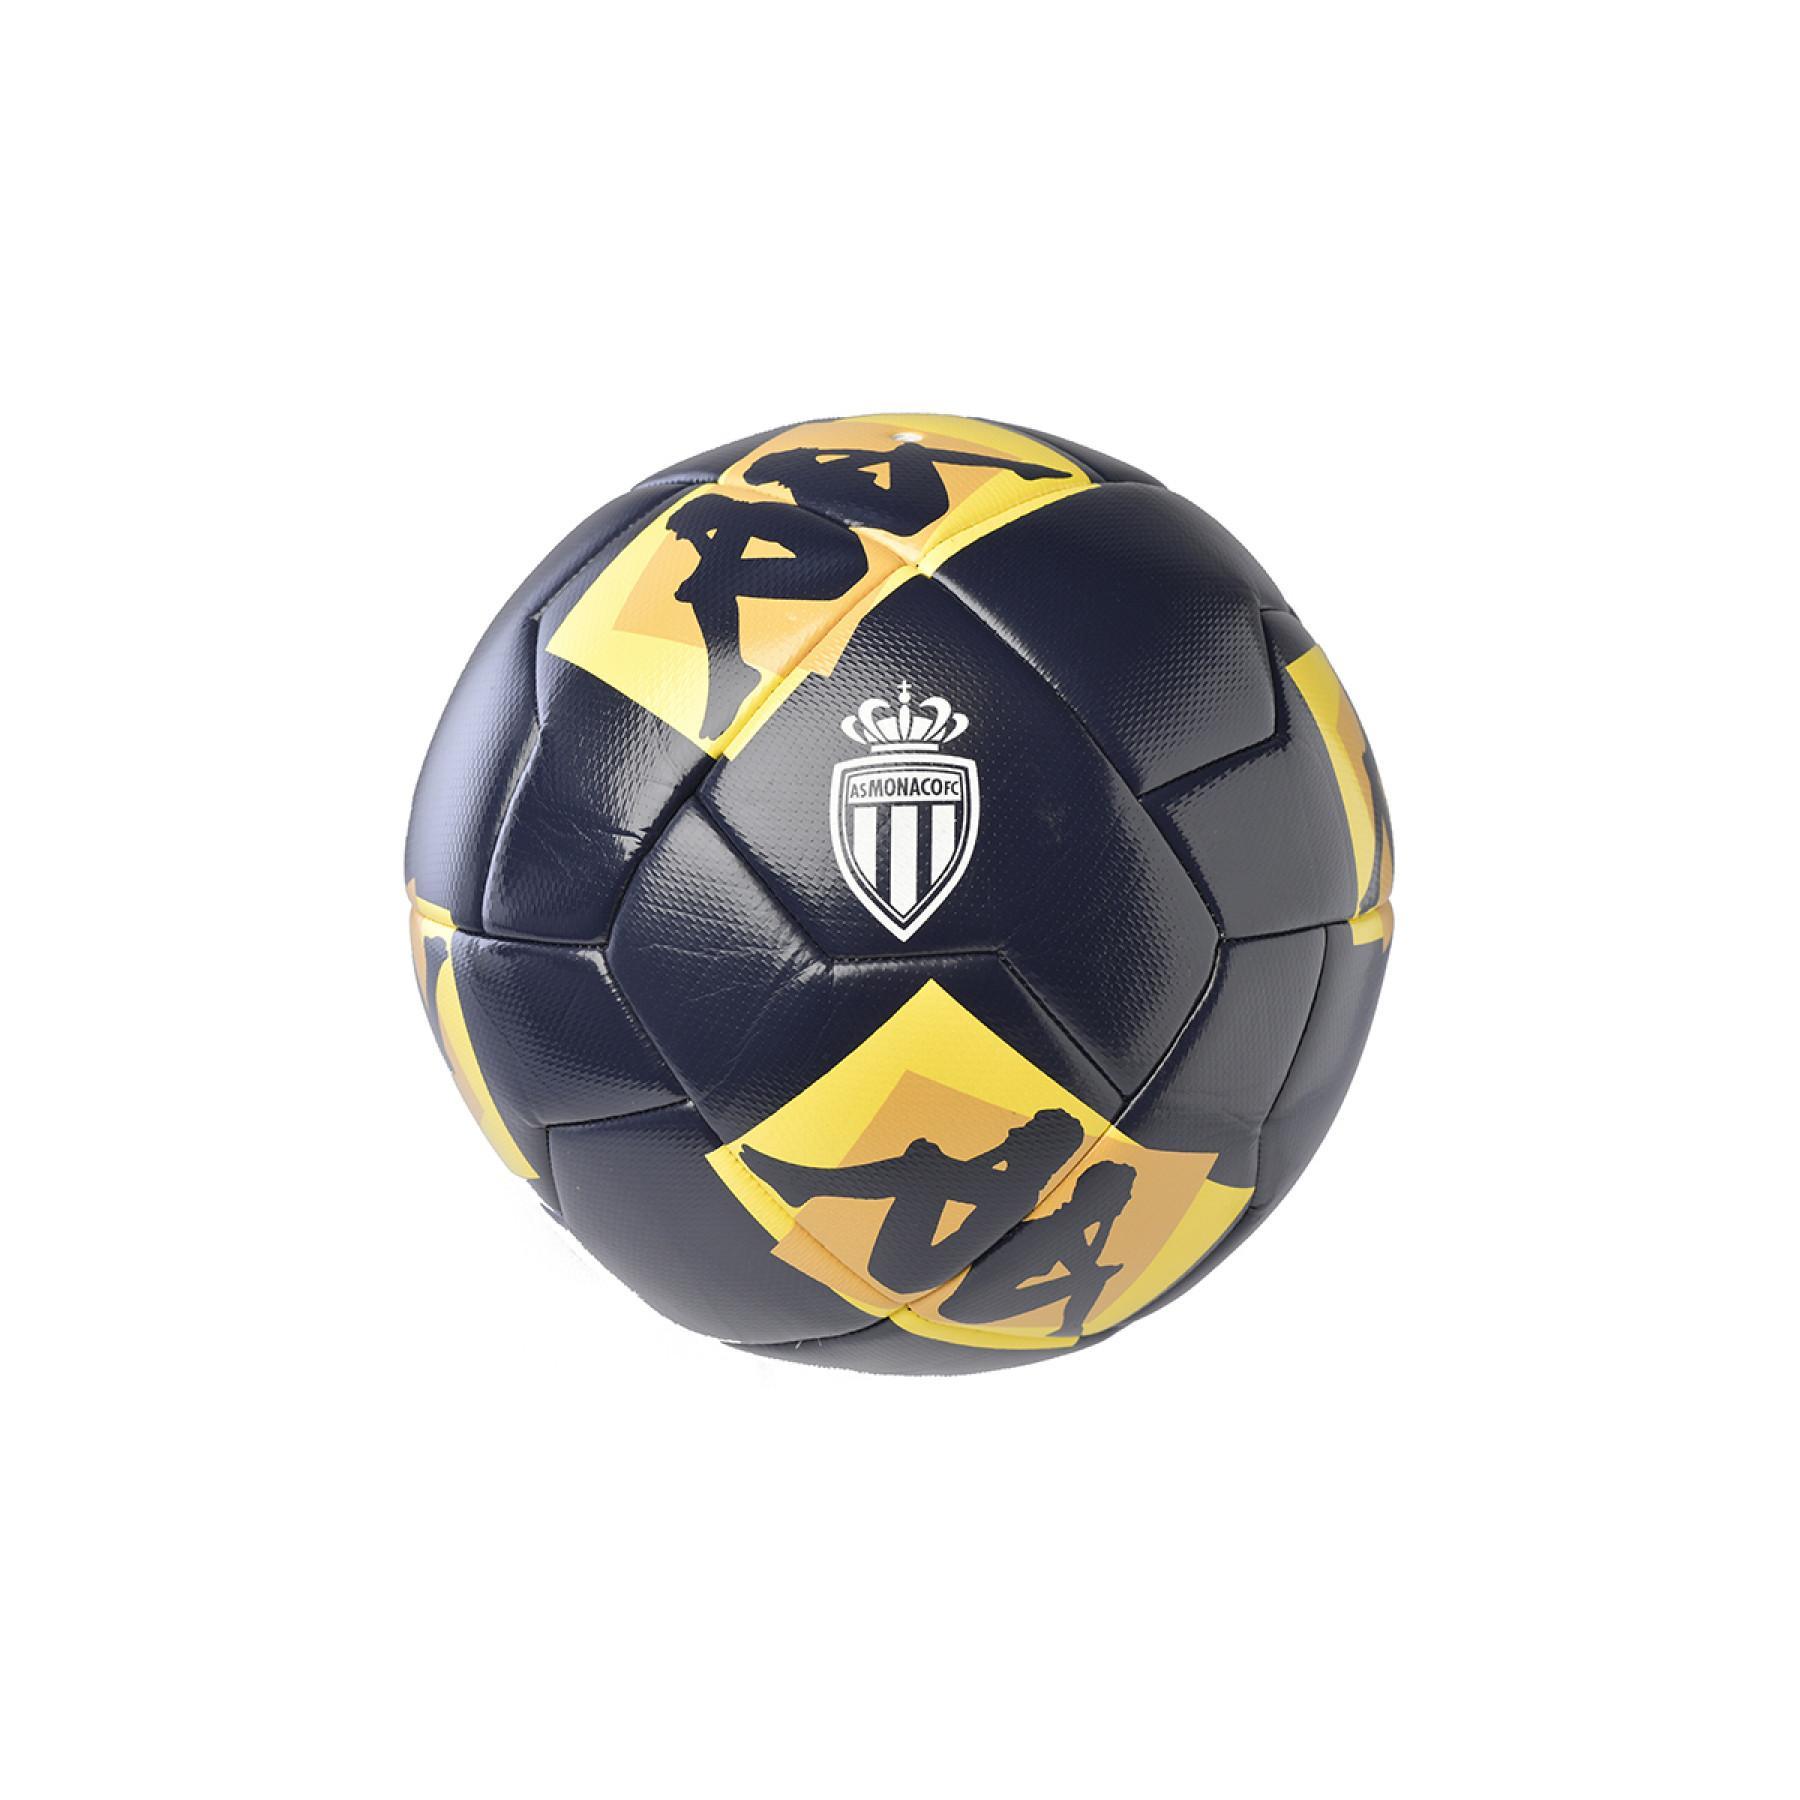 Spielball AS Monaco 2020/21 20.3G